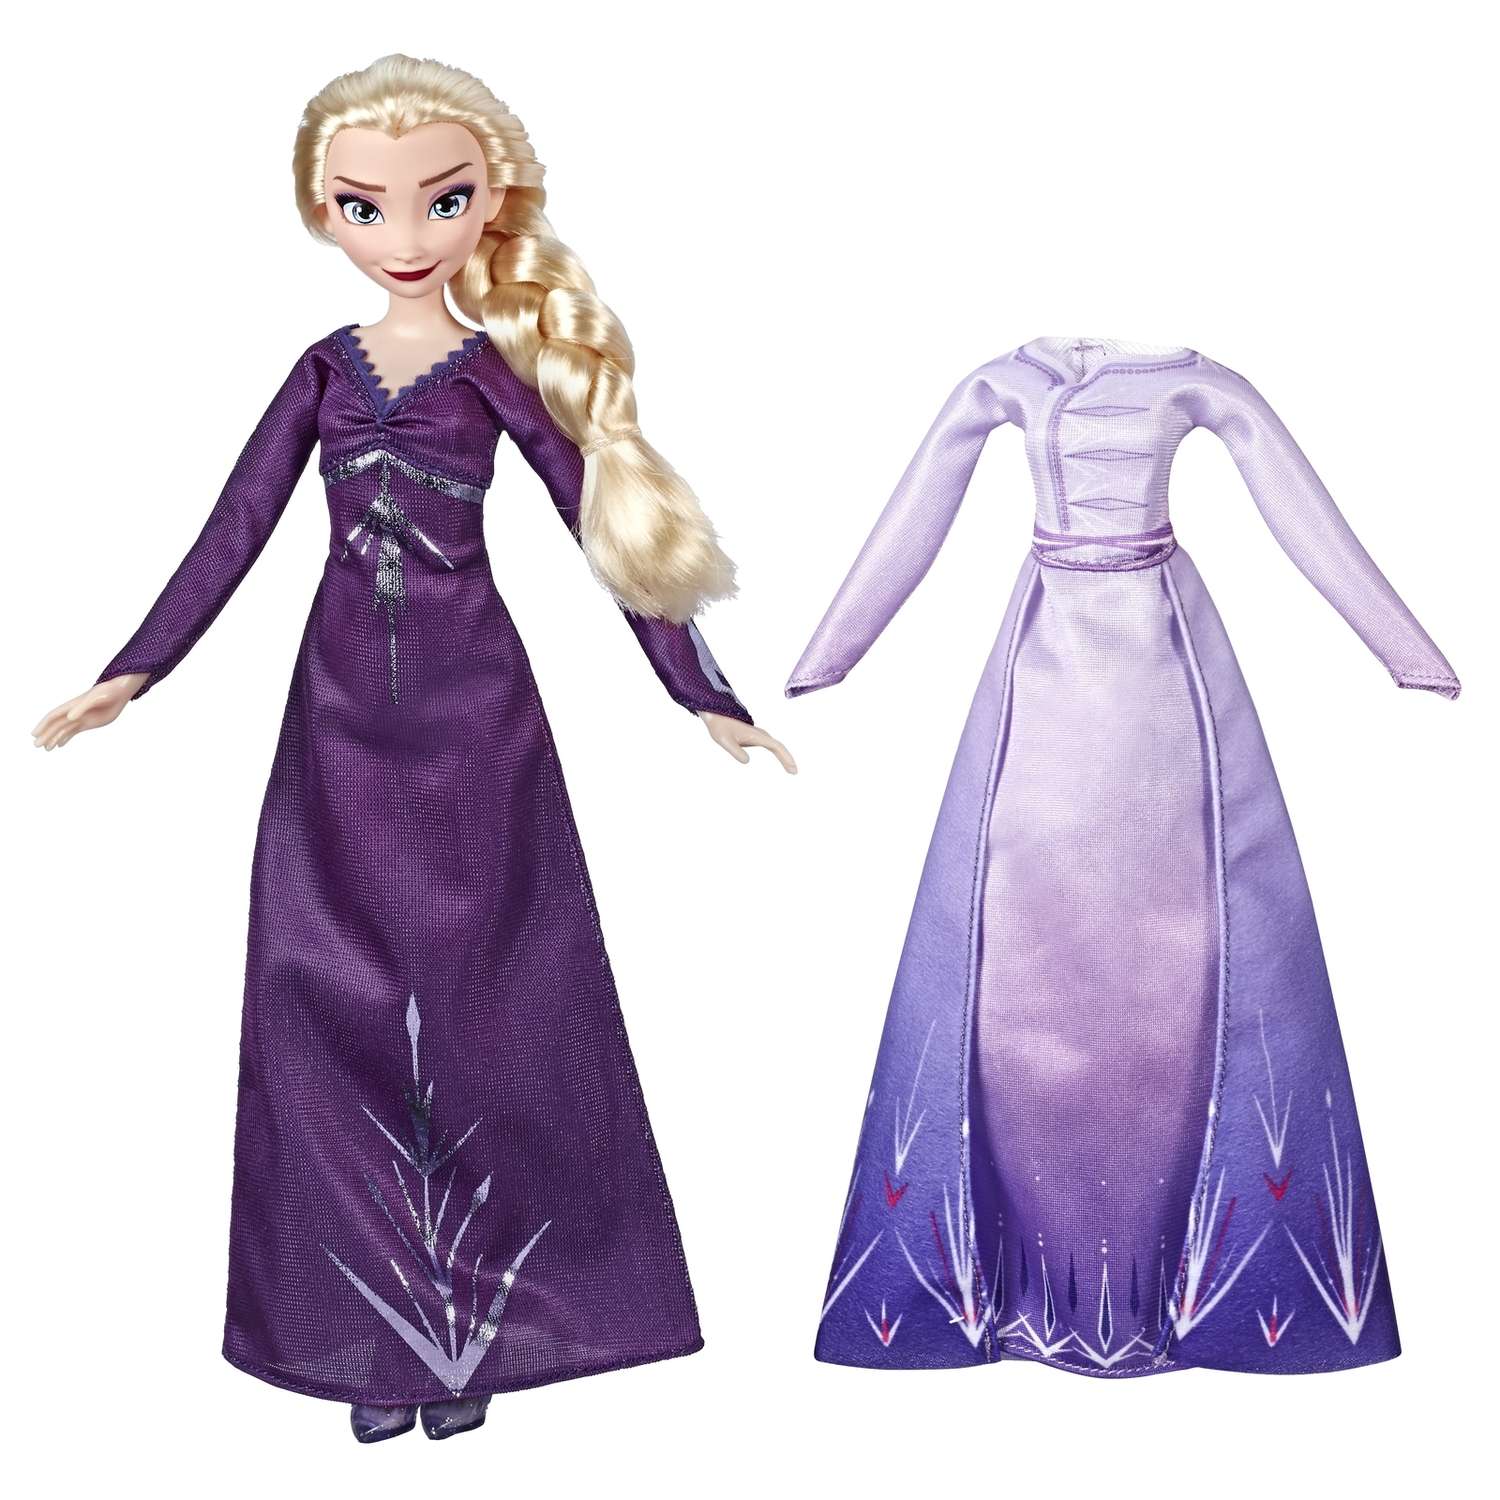 Кукла Disney Frozen Холодное Сердце 2 Эльза с дополнительным нарядом E6907EU4 - фото 1